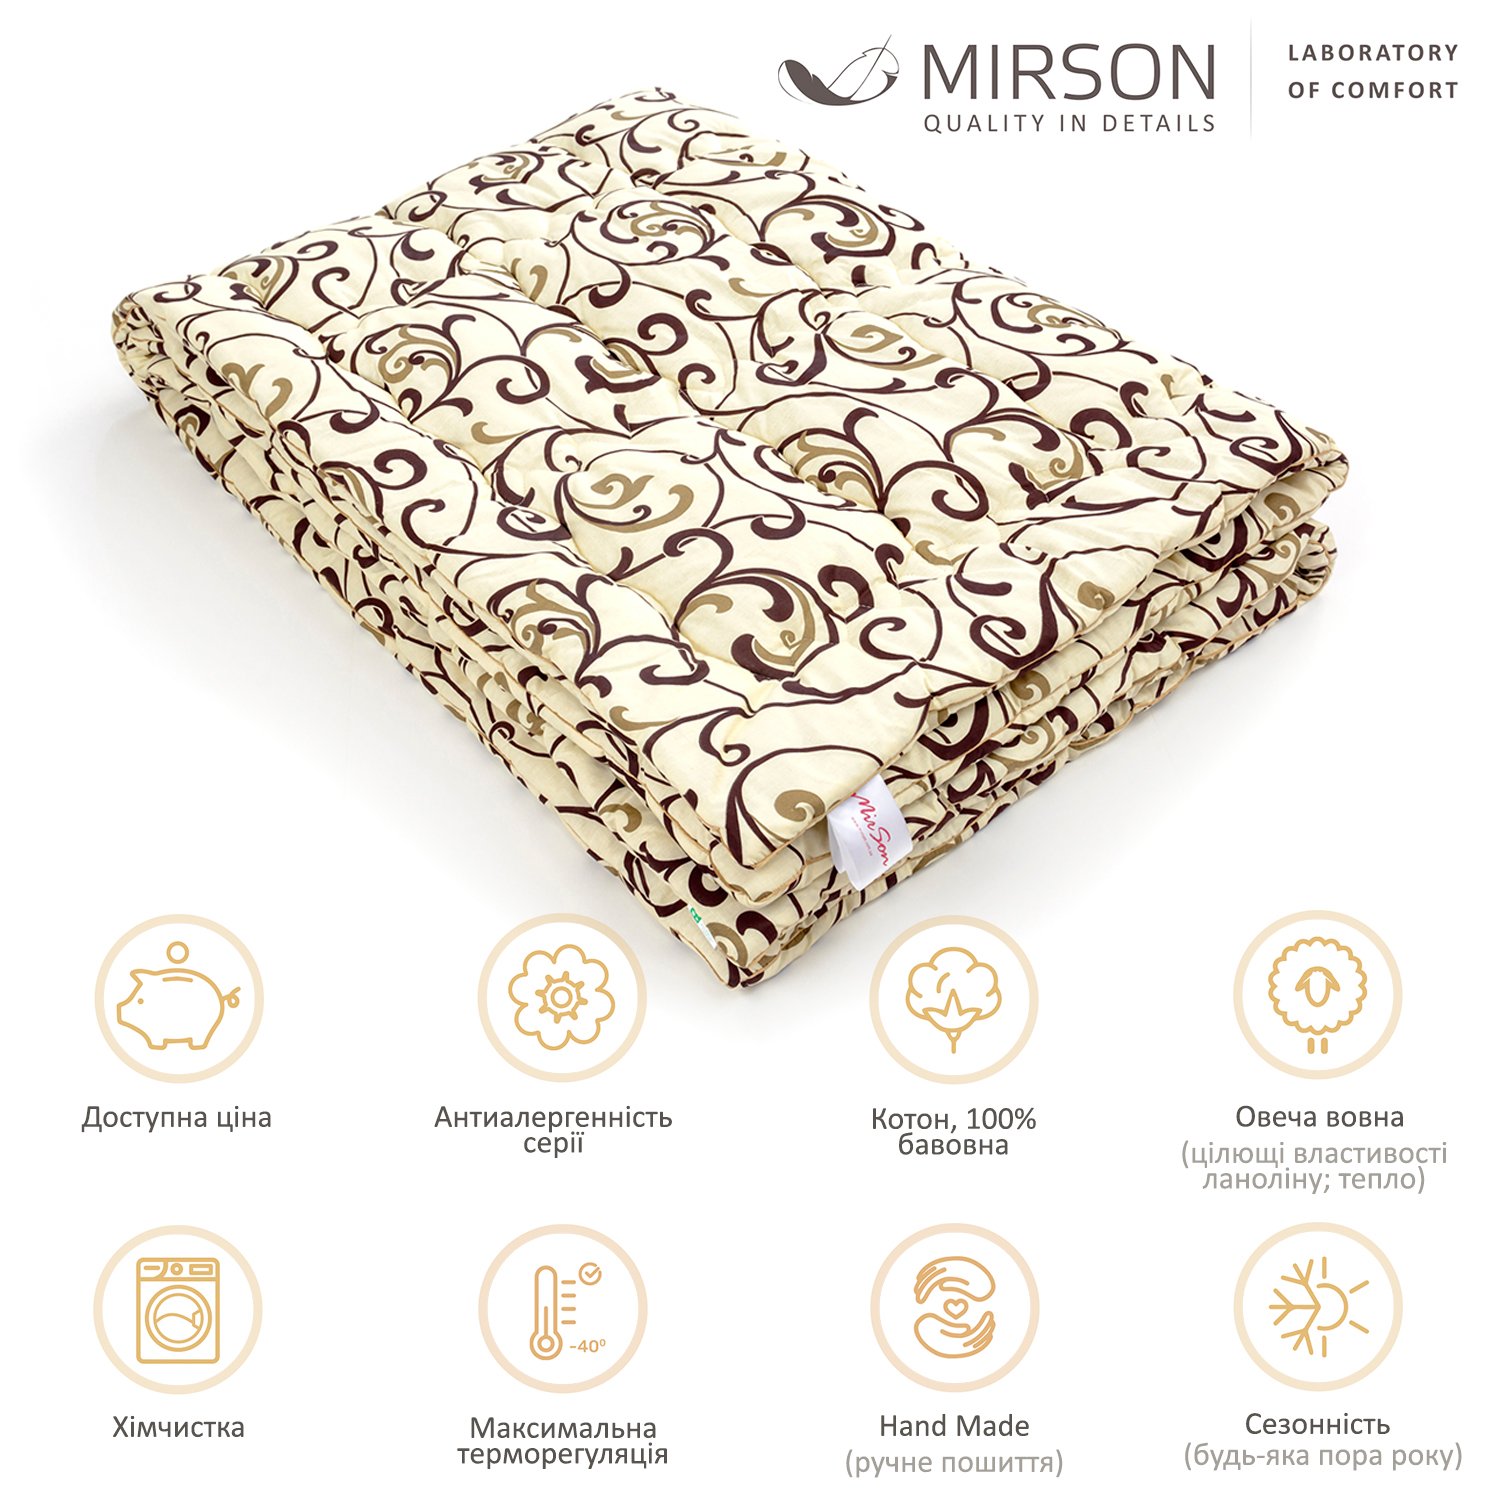 Одеяло шерстяное MirSon Hand Made №162, демисезонное, 110x140 см, бежевое с узором - фото 5